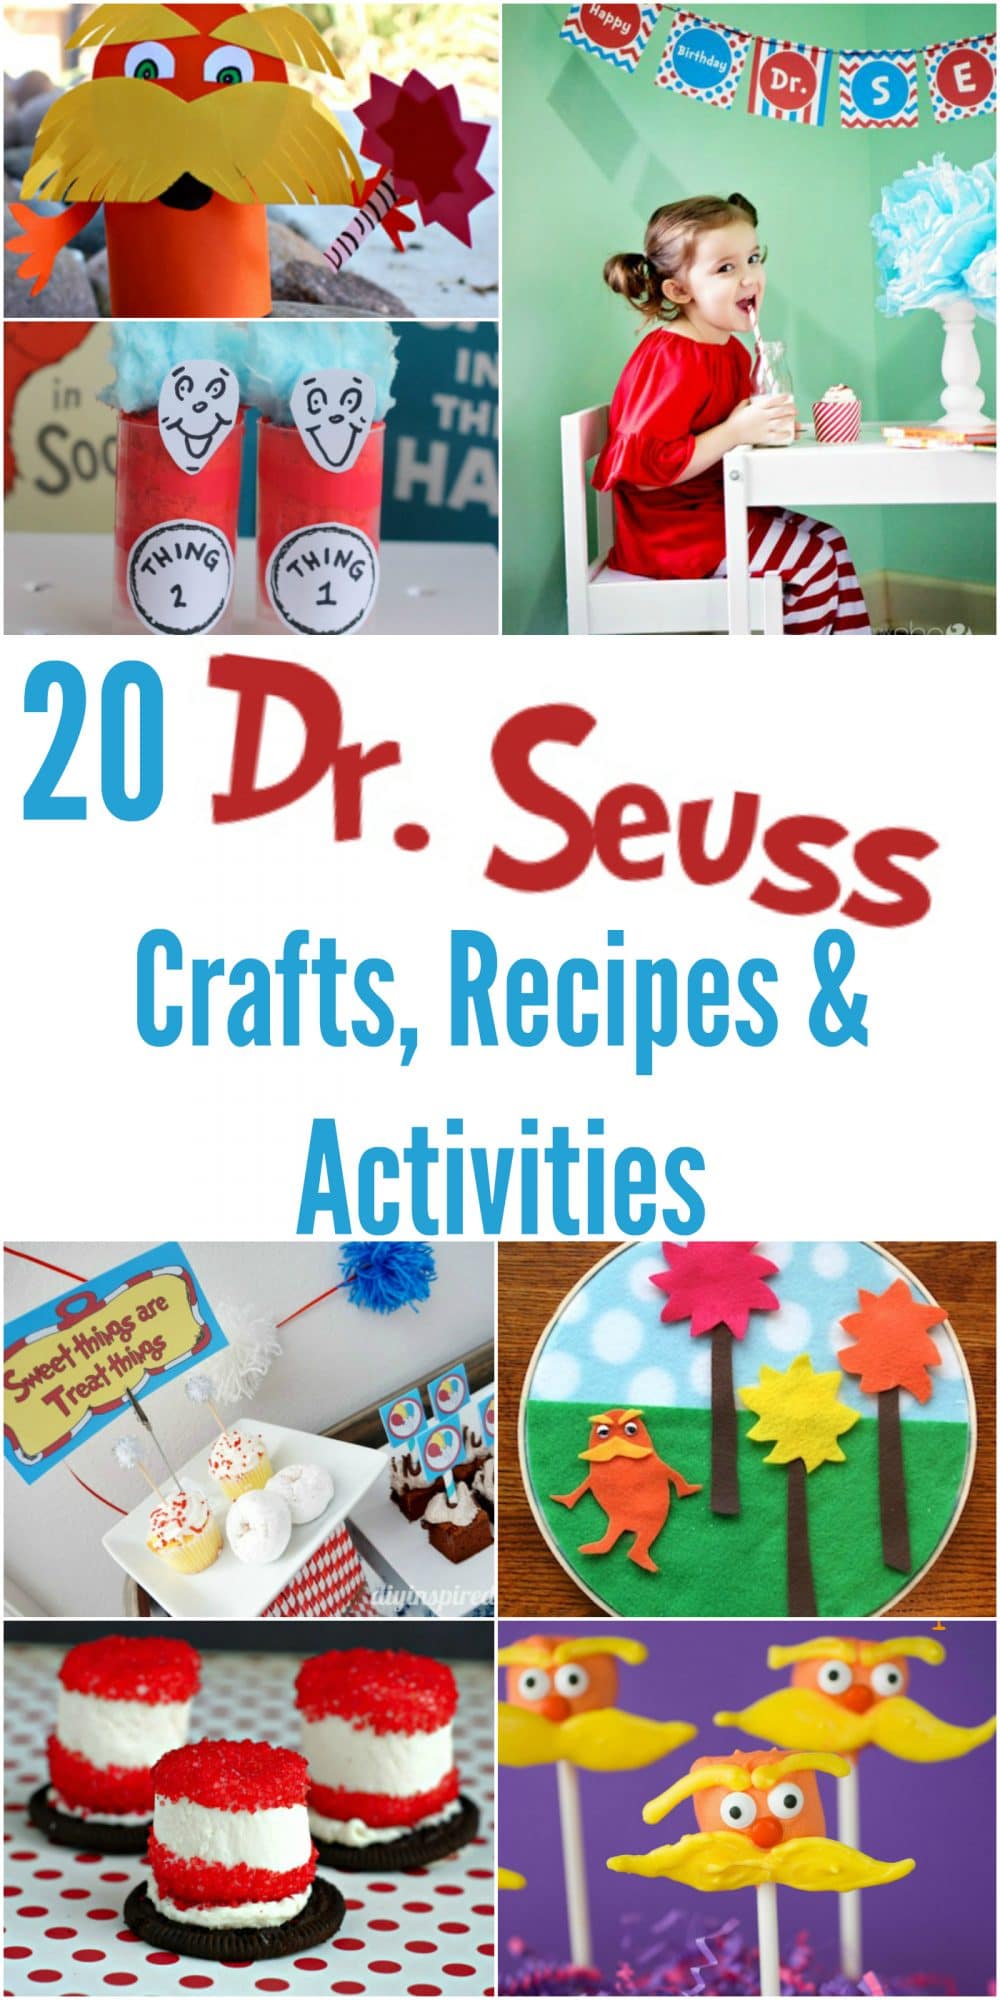 20 Dr. Seuss Crafts, Recipes & Activities